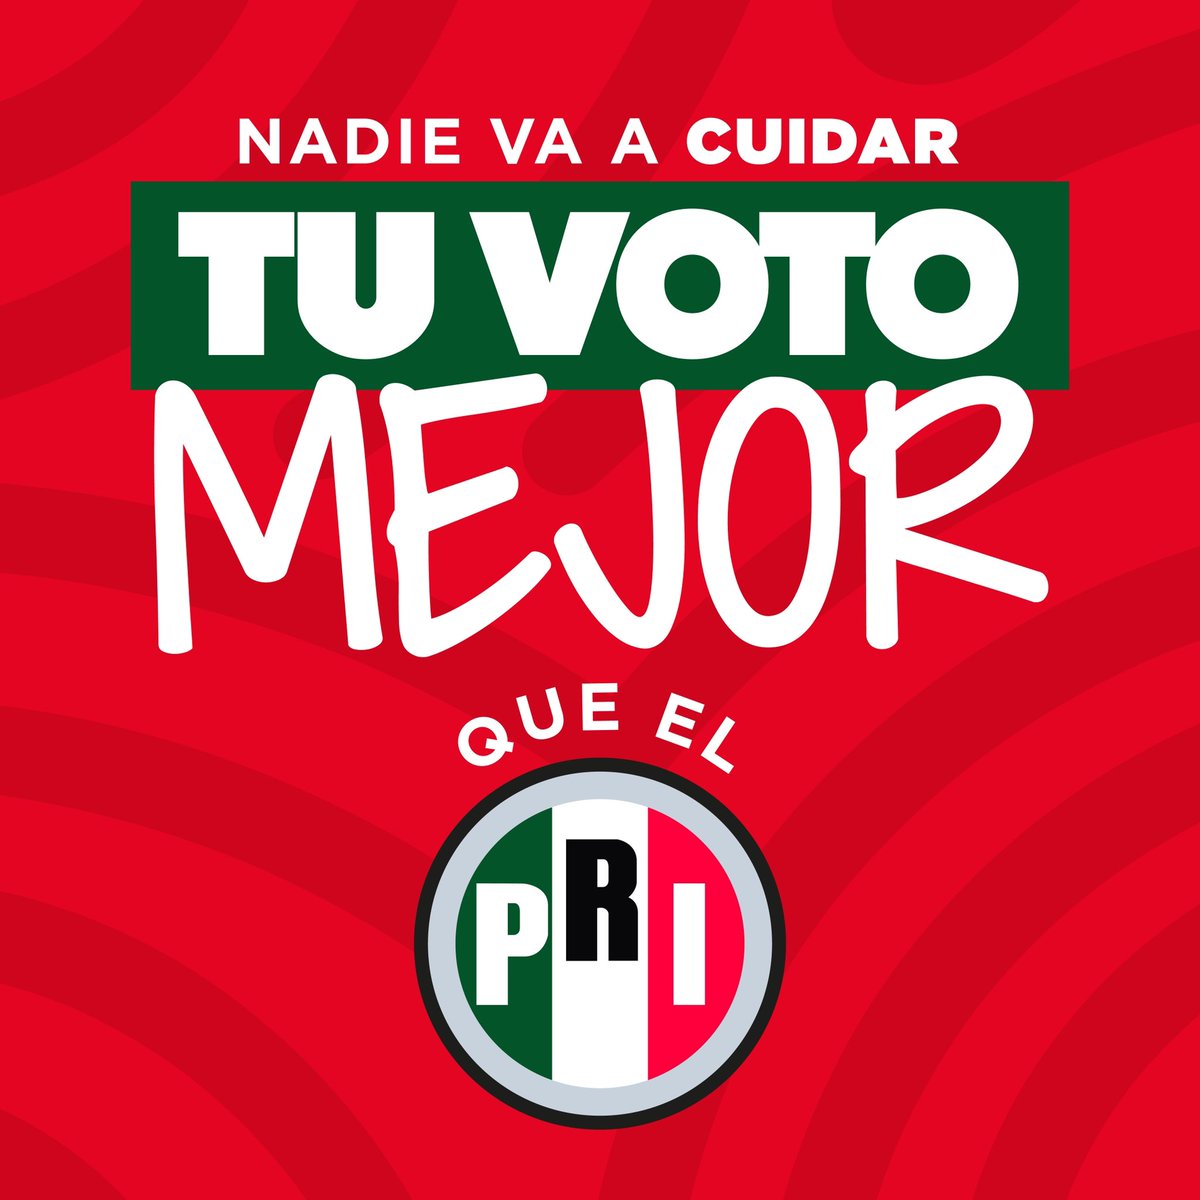 ¡#VotaPRI porque nadie va a cuidar mejor tu voto que nosotros! Nuestro equipo lo integran mujeres y hombres con experiencia, capacidad y amor a México, que pelearán porque se respete la decisión de los mexicanos. ¡Vamos a ganar!